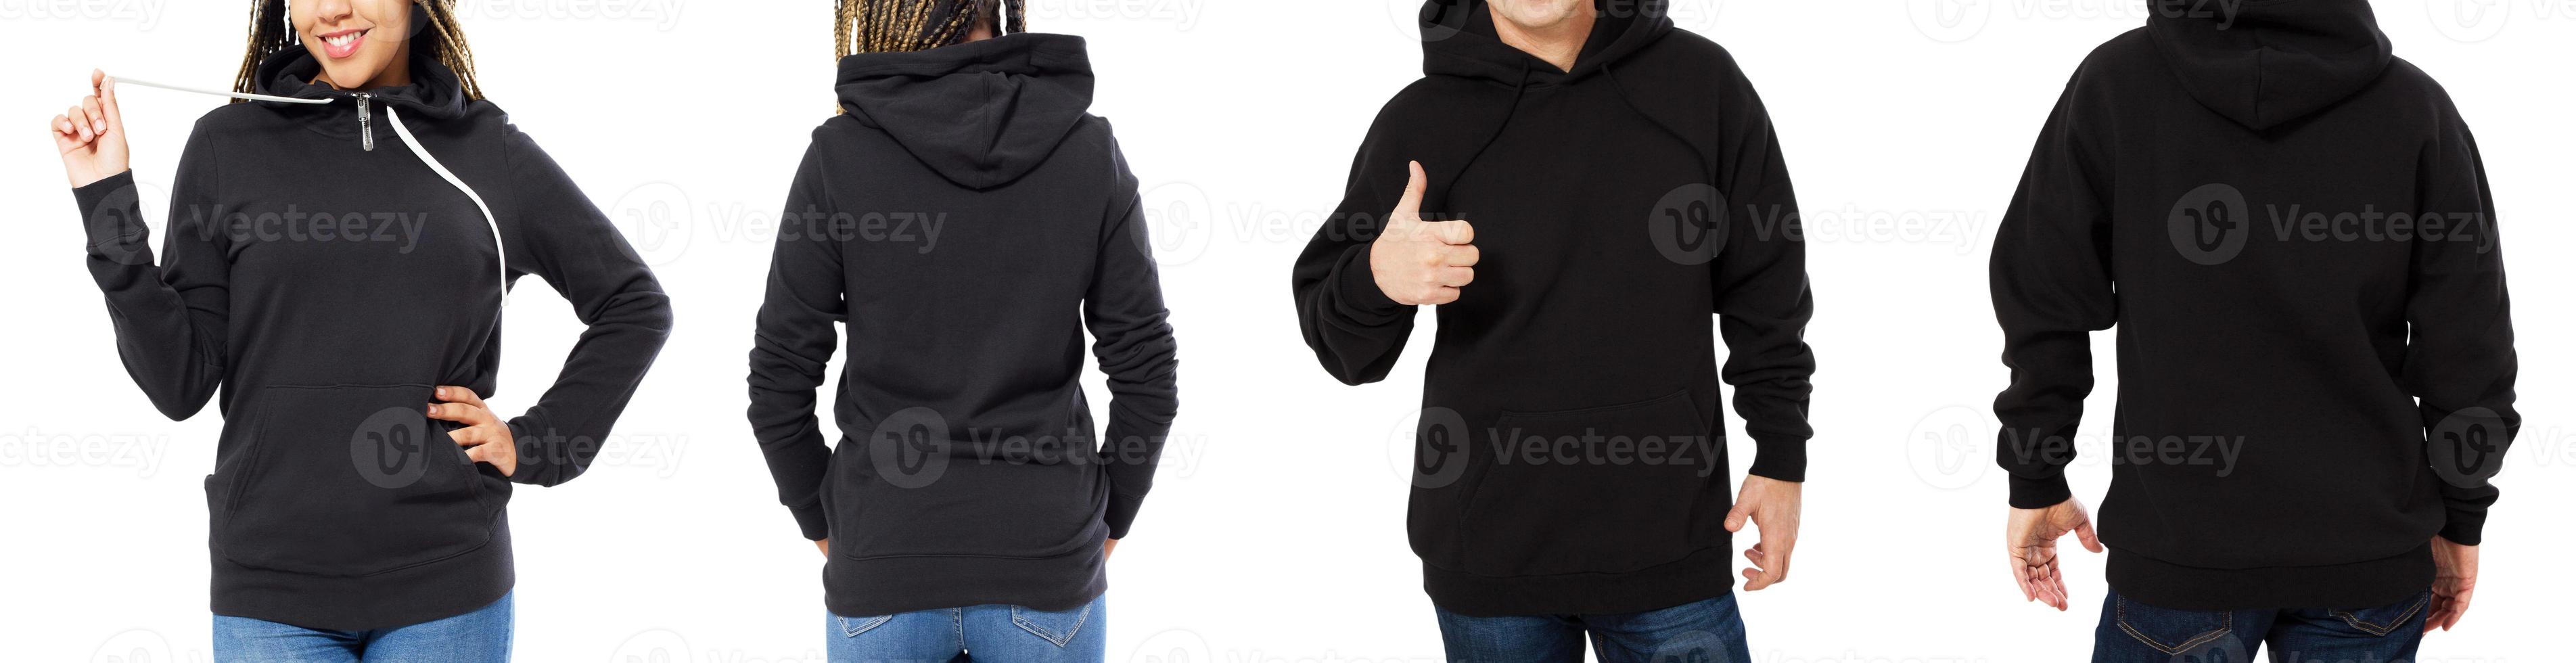 Vorderansicht Rückseite und Rückseite schwarzes Sweatshirt. schöner schwarzer weiblicher und männlicher Körper in Vorlagenkleidung für Druck- und Kopierraum isoliert auf weißem Hintergrund. Attrappe, Lehrmodell, Simulation foto